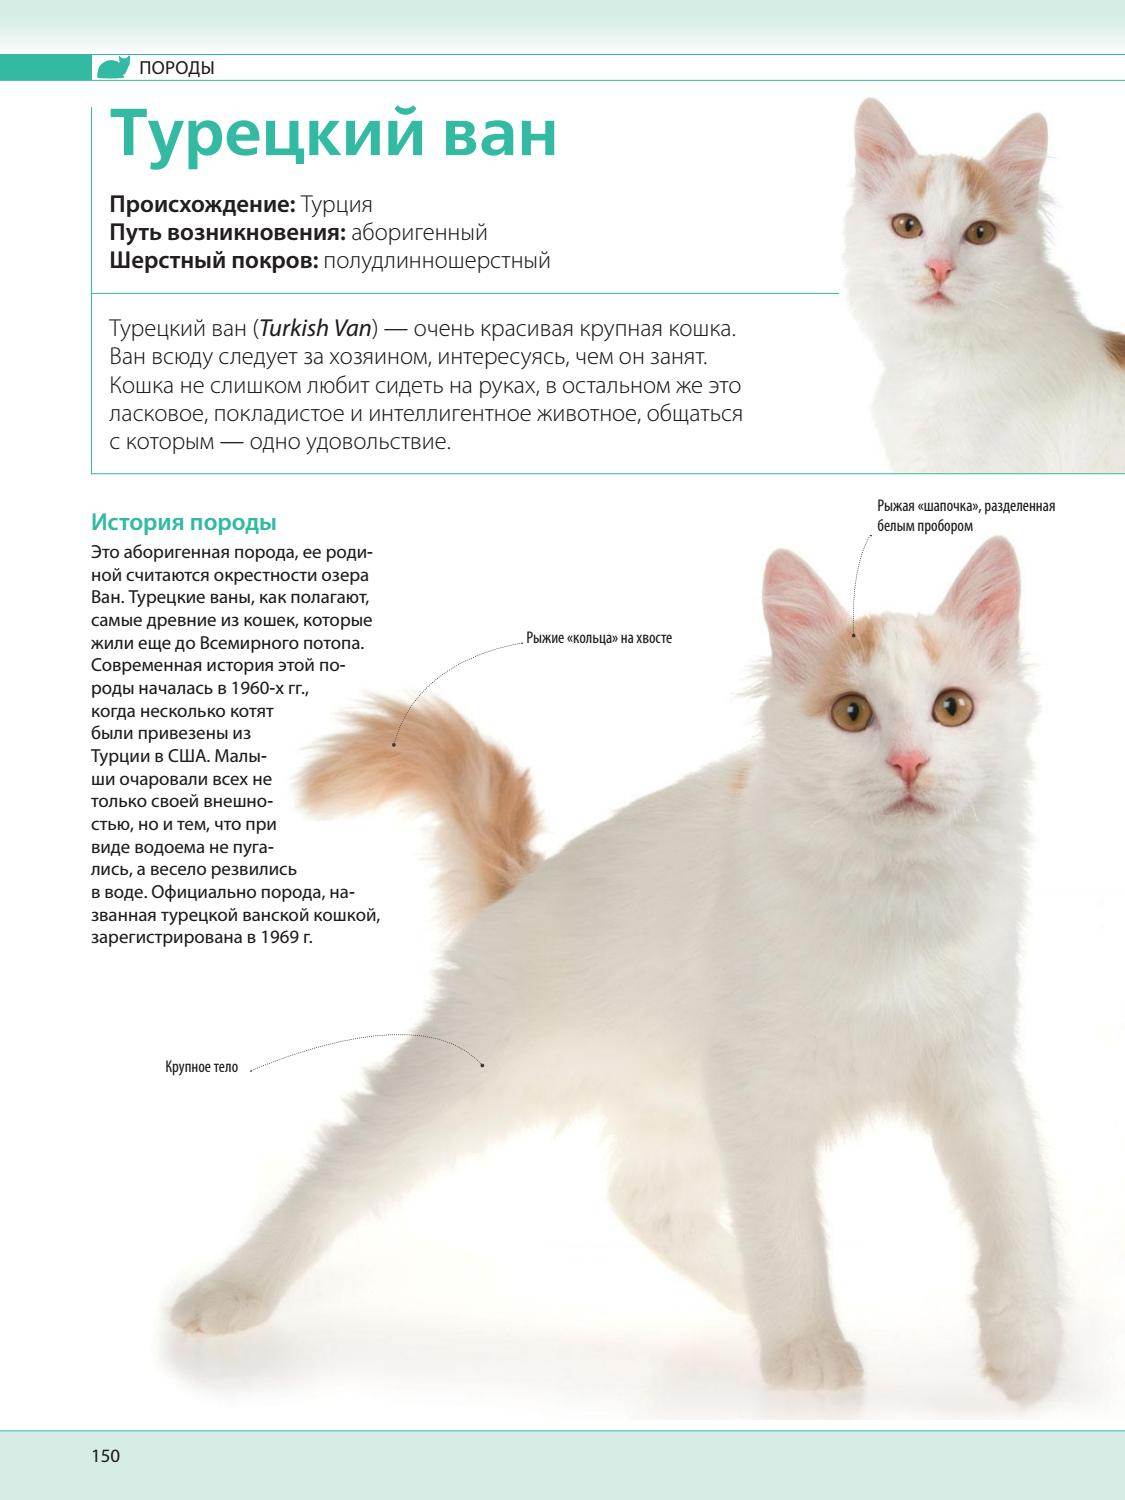 Турецкий ван: 5 поразительных вещей, которые следует знать про эту породу кошек - коточек